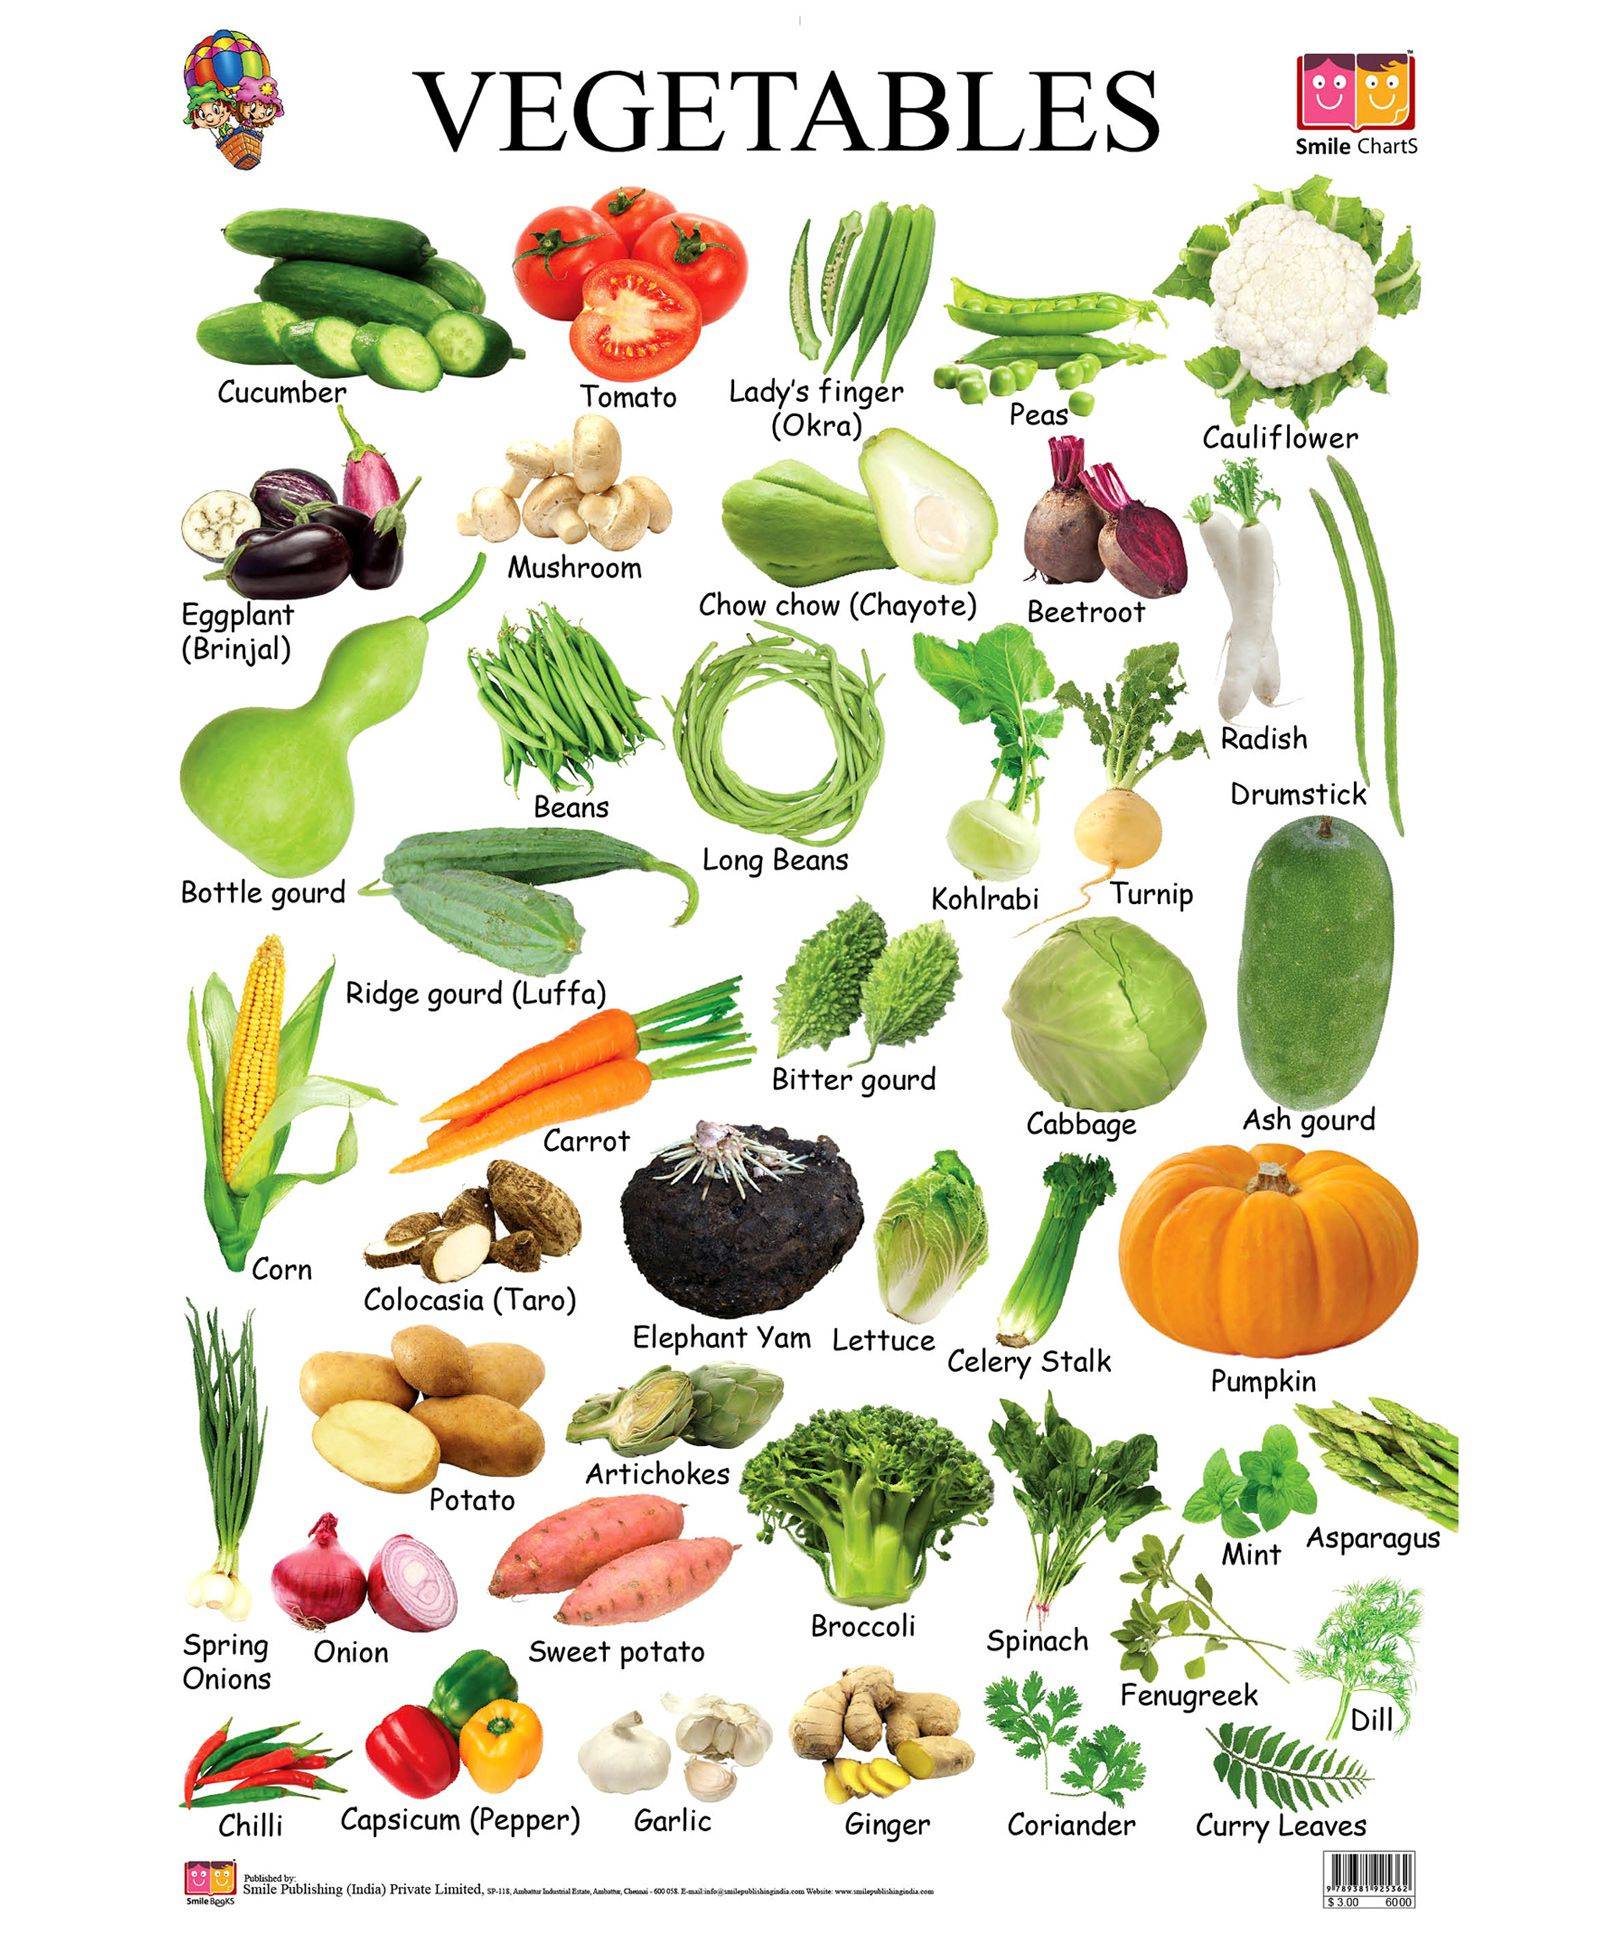 Vegetables list. Овощи на английском языке для детей. Овощи на английском языке для детей с переводом. Фрукты и овощи на английском языке. Название овощей и фруктов на английском.